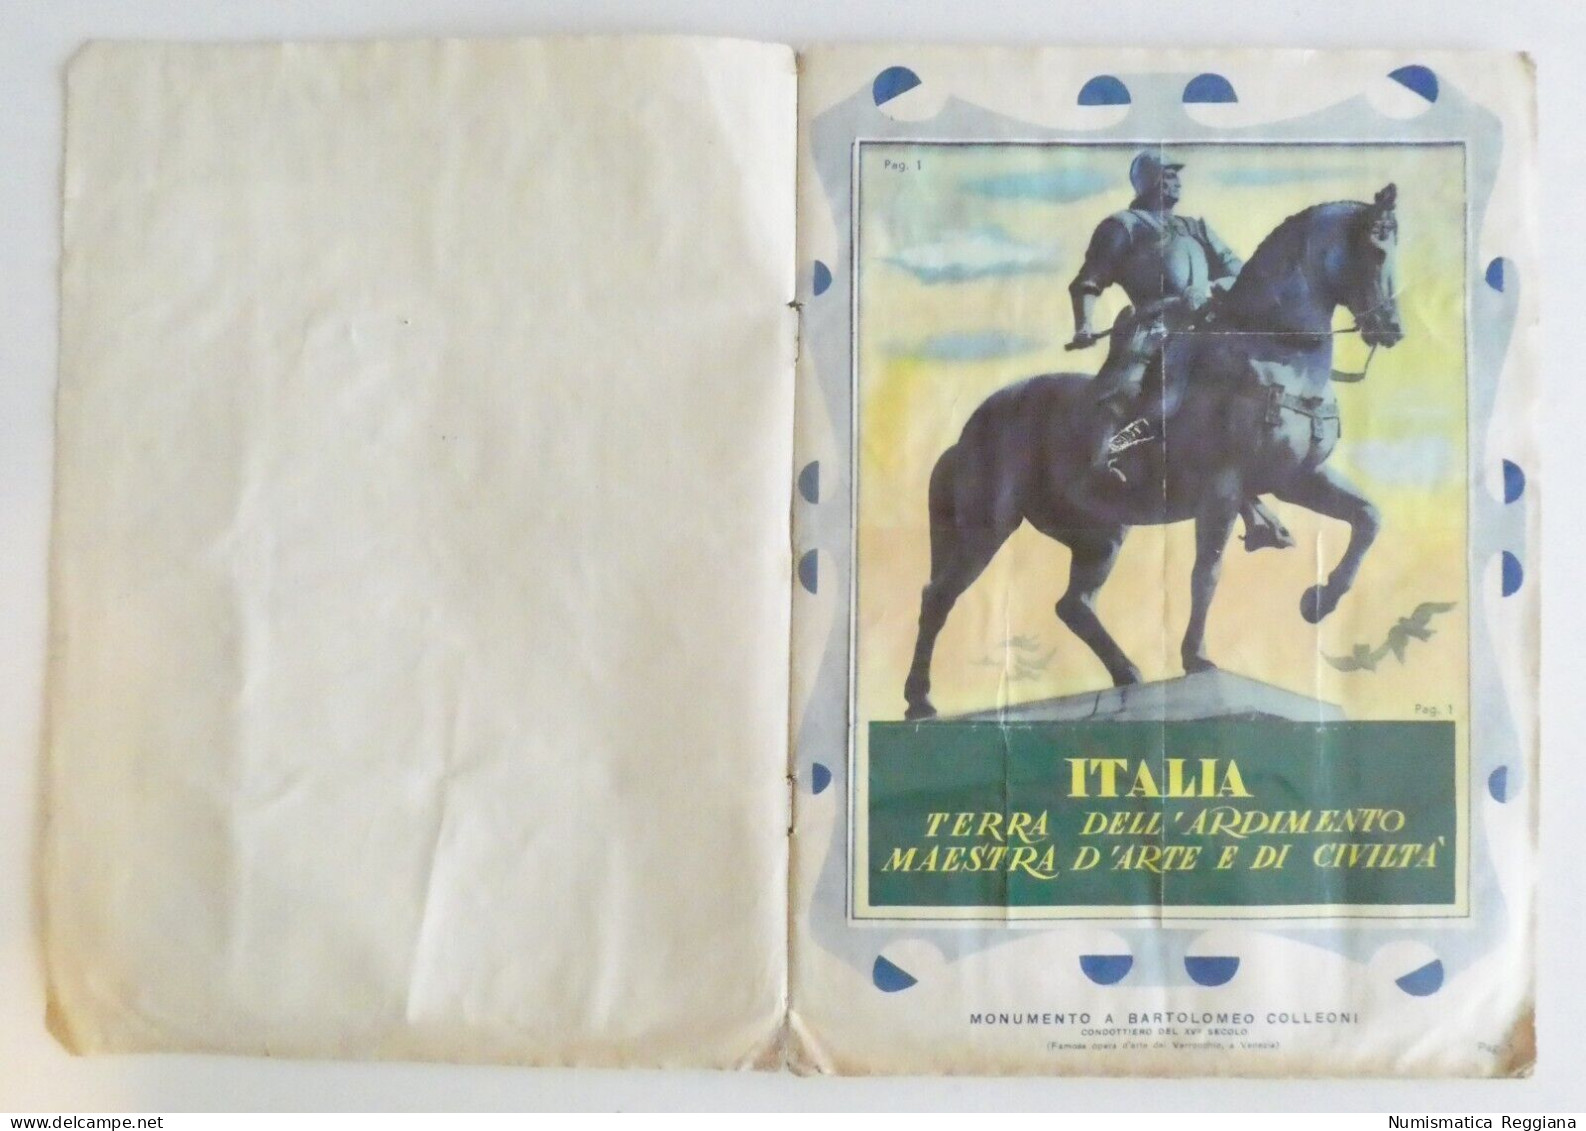 Album Figurine Le Regioni D'Italia - Edizione Lampo 1954 (10 Figurine Mancanti) - Trading Cards